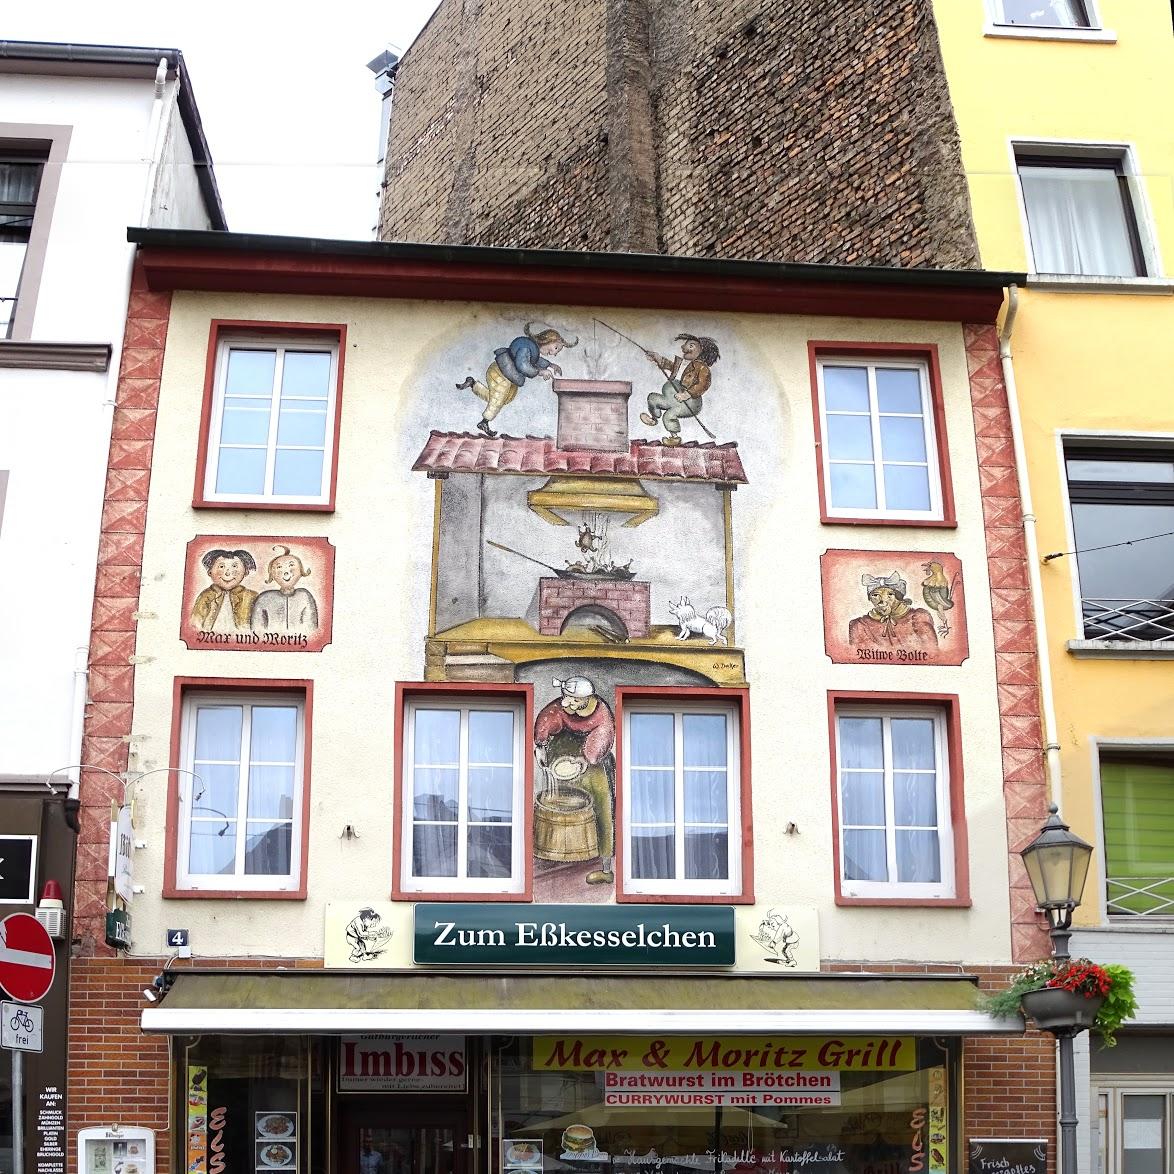 Restaurant "Gaststätten, Restaurants Zum Eßkesselchen" in Koblenz